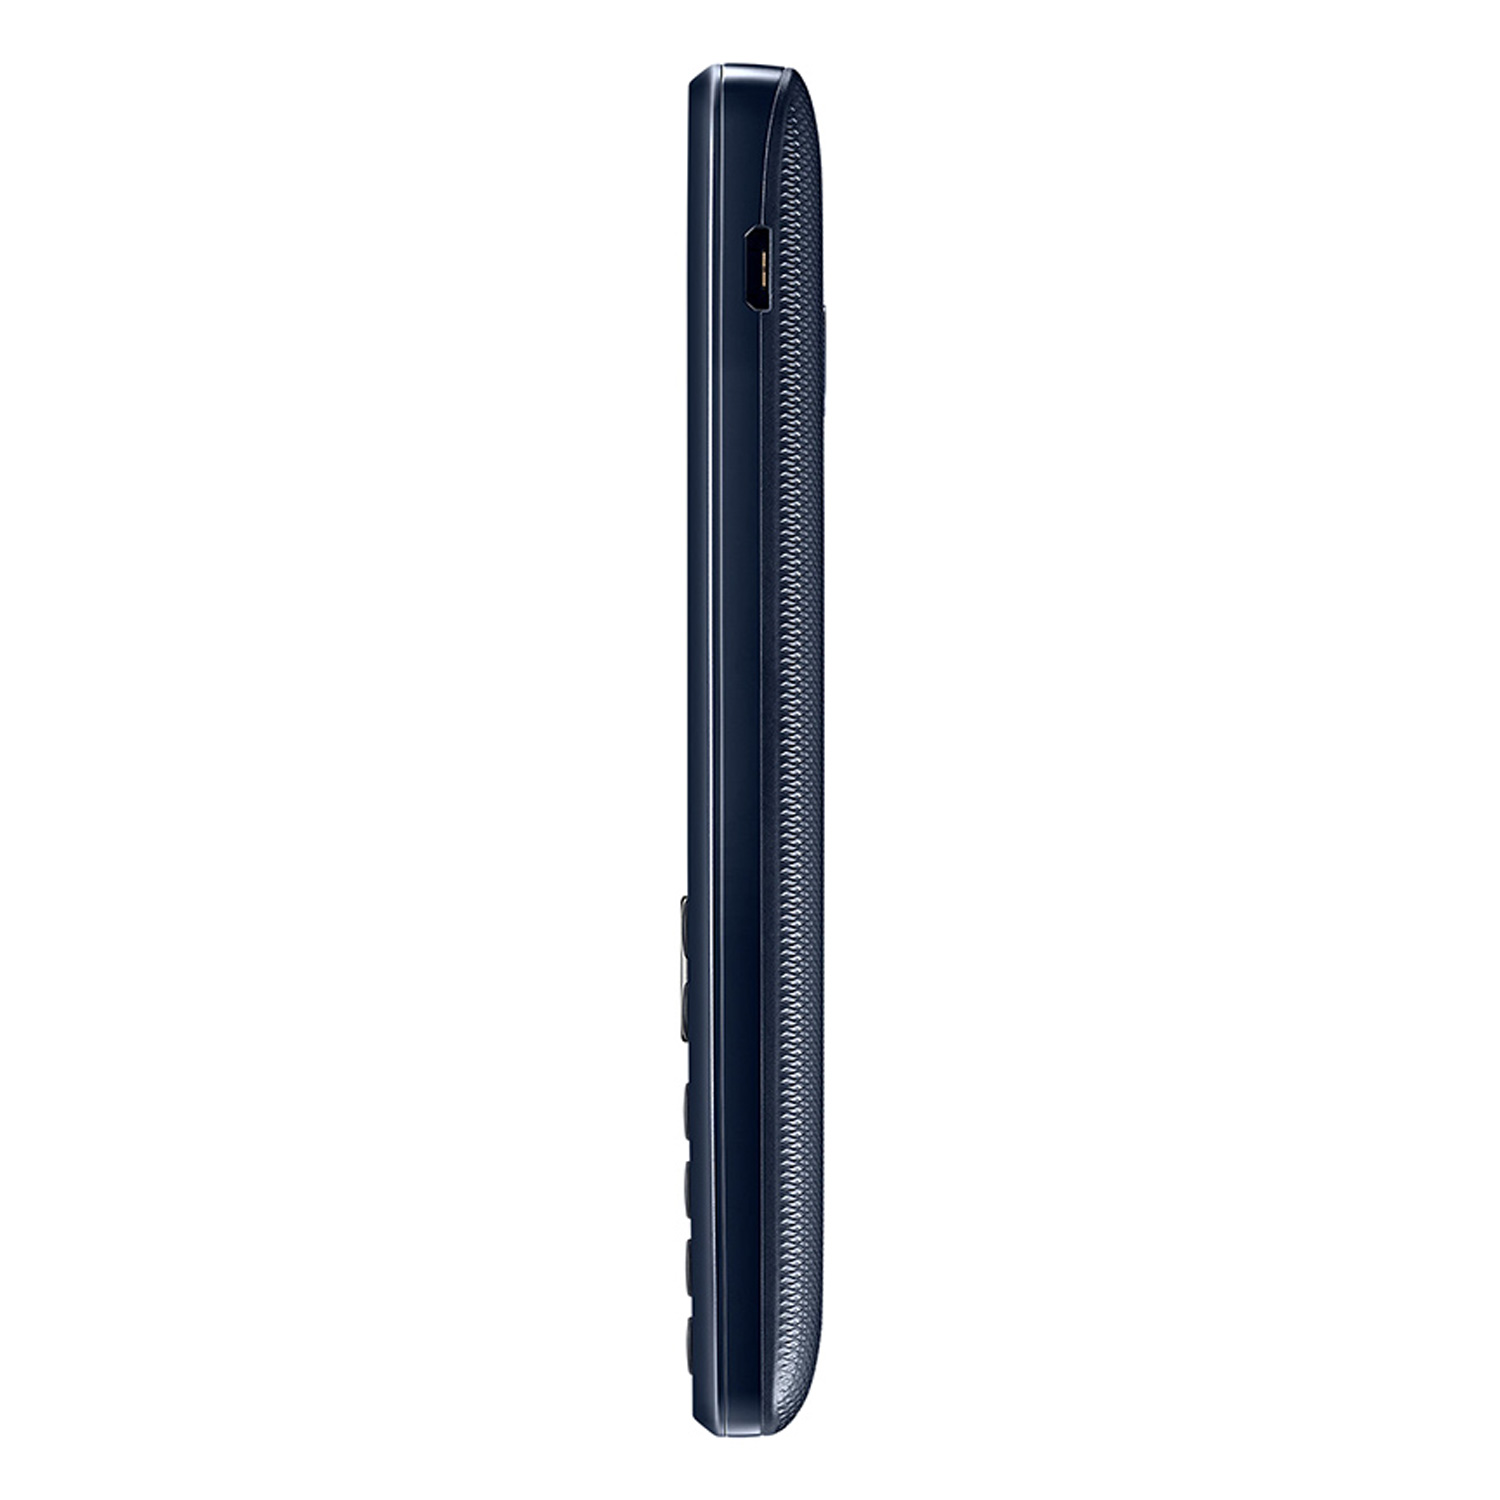 Celular Samsung B350E Dual SIM Tela 2.4" - Preto